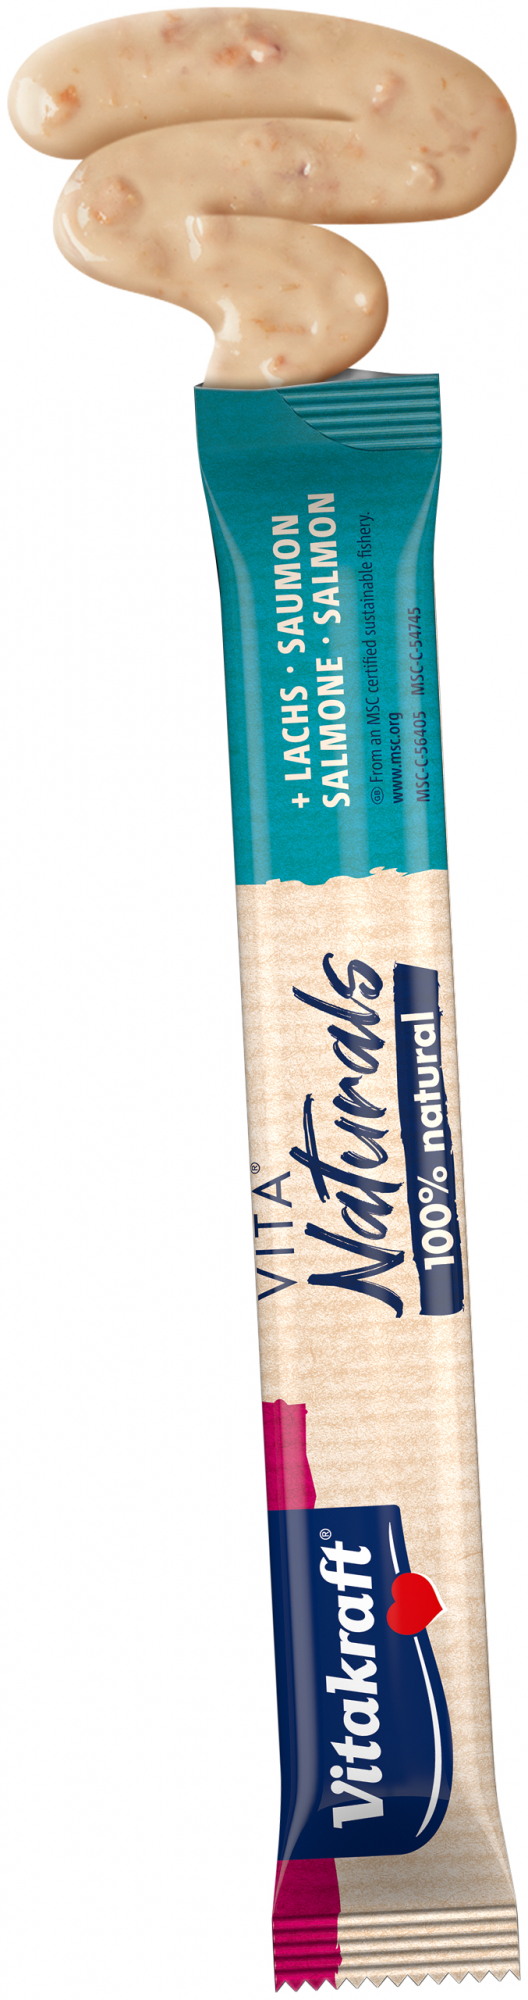 VitaNaturals Creamy - Snack per Gatto al Salmone e Manzo - 5x15g